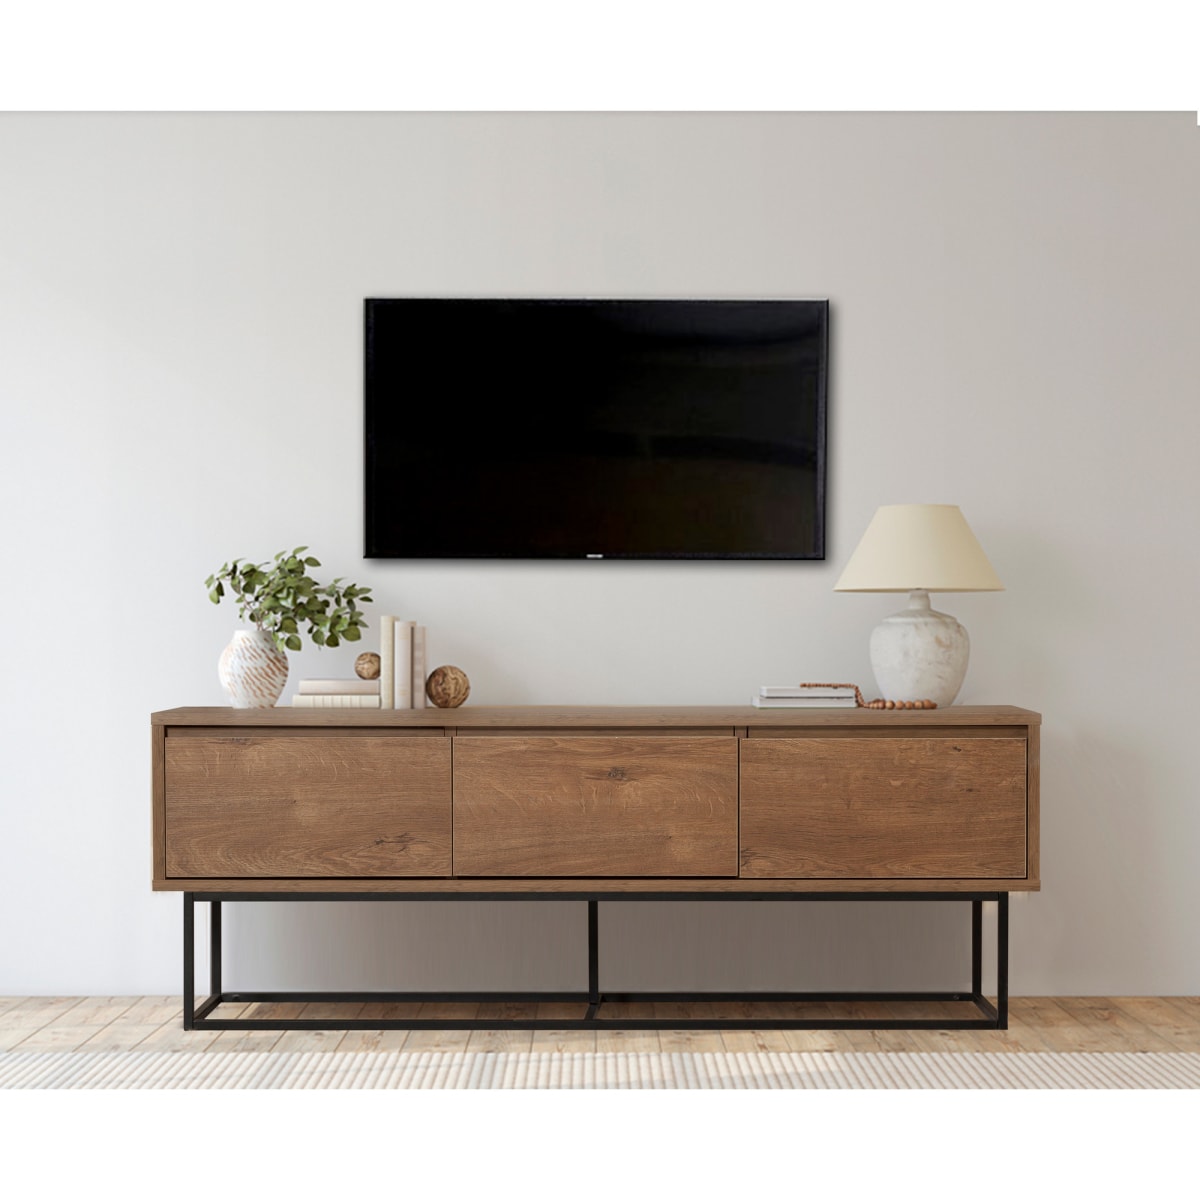 Chic Home Collection Milla tv-taso 140 cm, tummanruskea/musta |  Karkkainen.com verkkokauppa